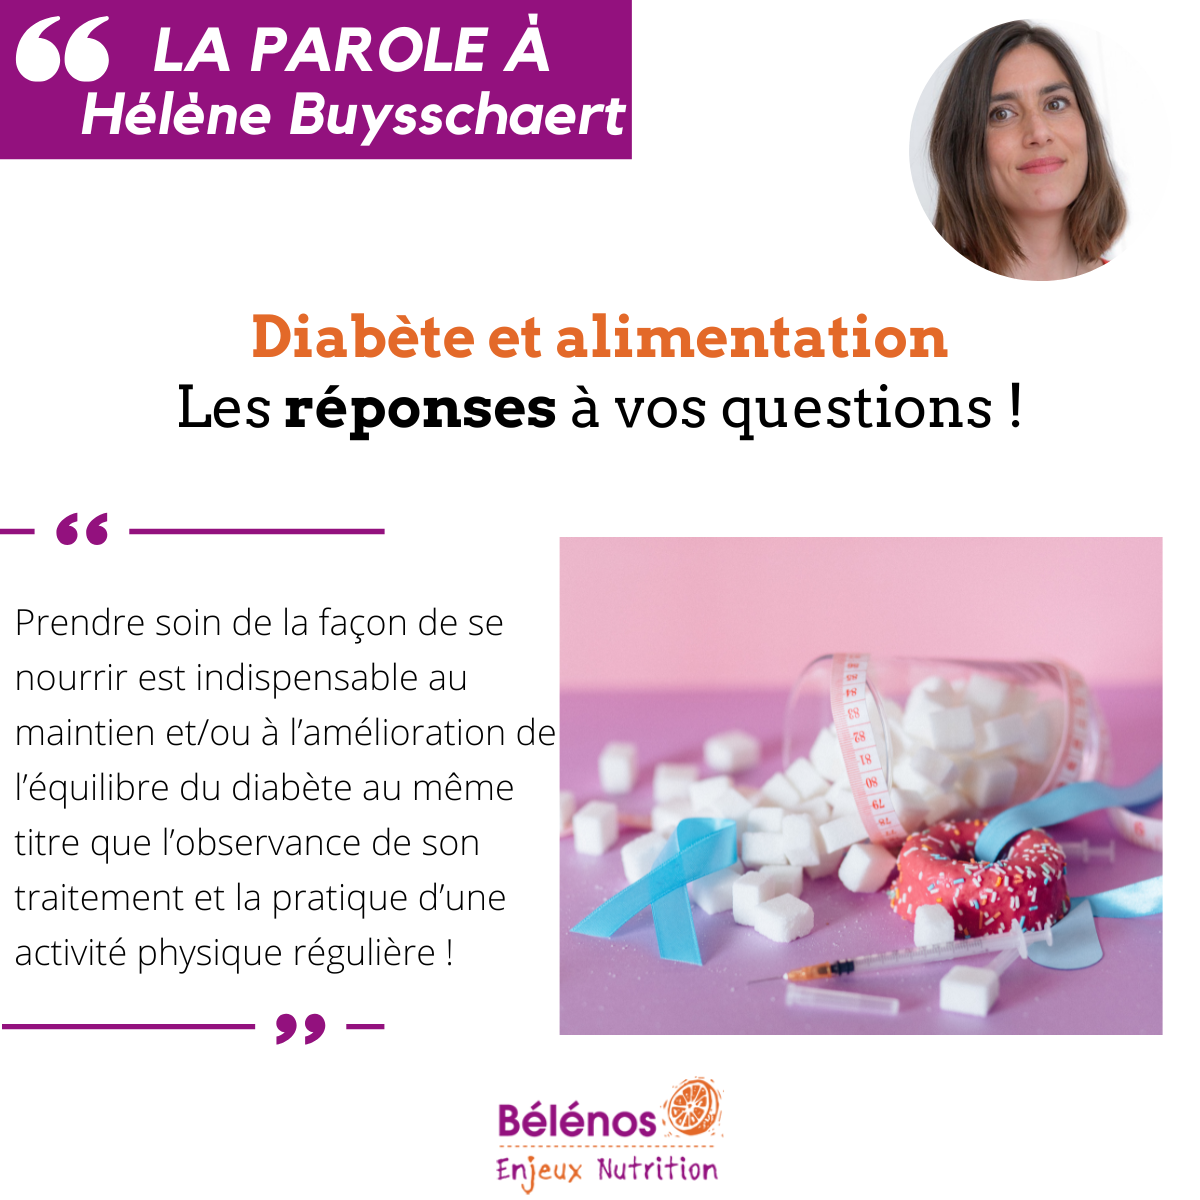 Titre : Alimentation et diabète, 7 conseils d'Hélène Buysschaert